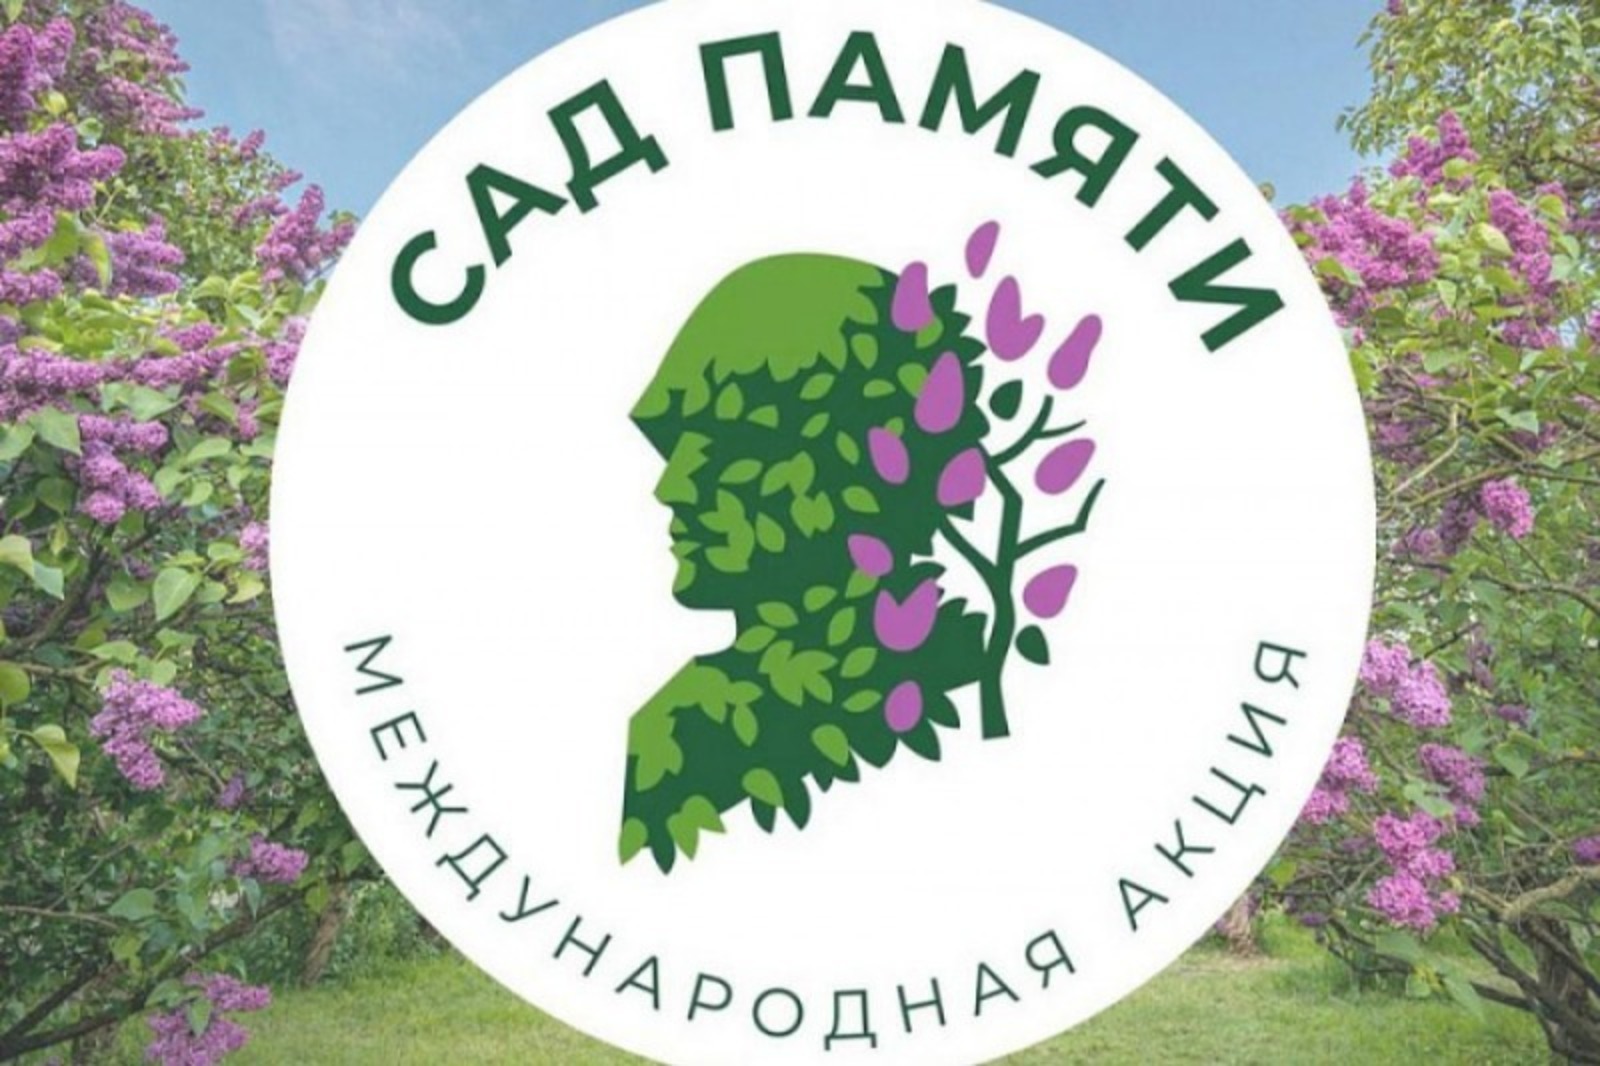 В Башкирии в рамках акции "Сад памяти" высажено 580 тысяч деревьев